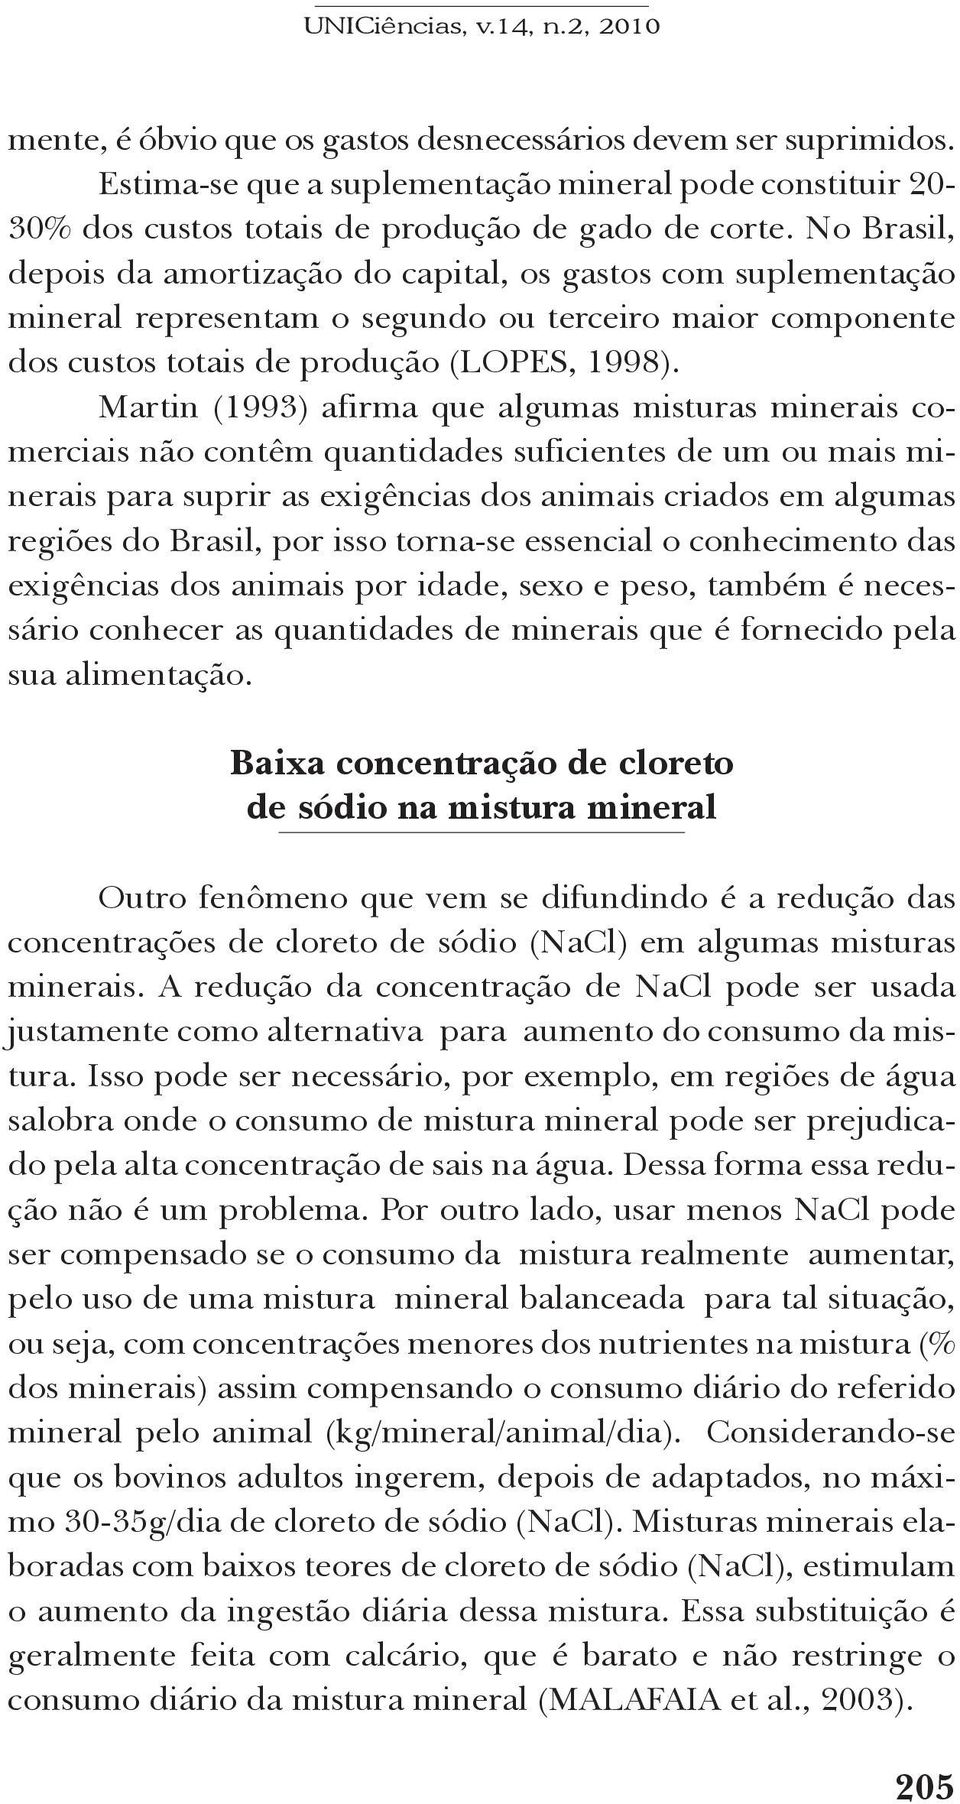 Martin (1993) afirma que algumas misturas minerais comerciais não contêm quantidades suficientes de um ou mais minerais para suprir as exigências dos animais criados em algumas regiões do Brasil, por